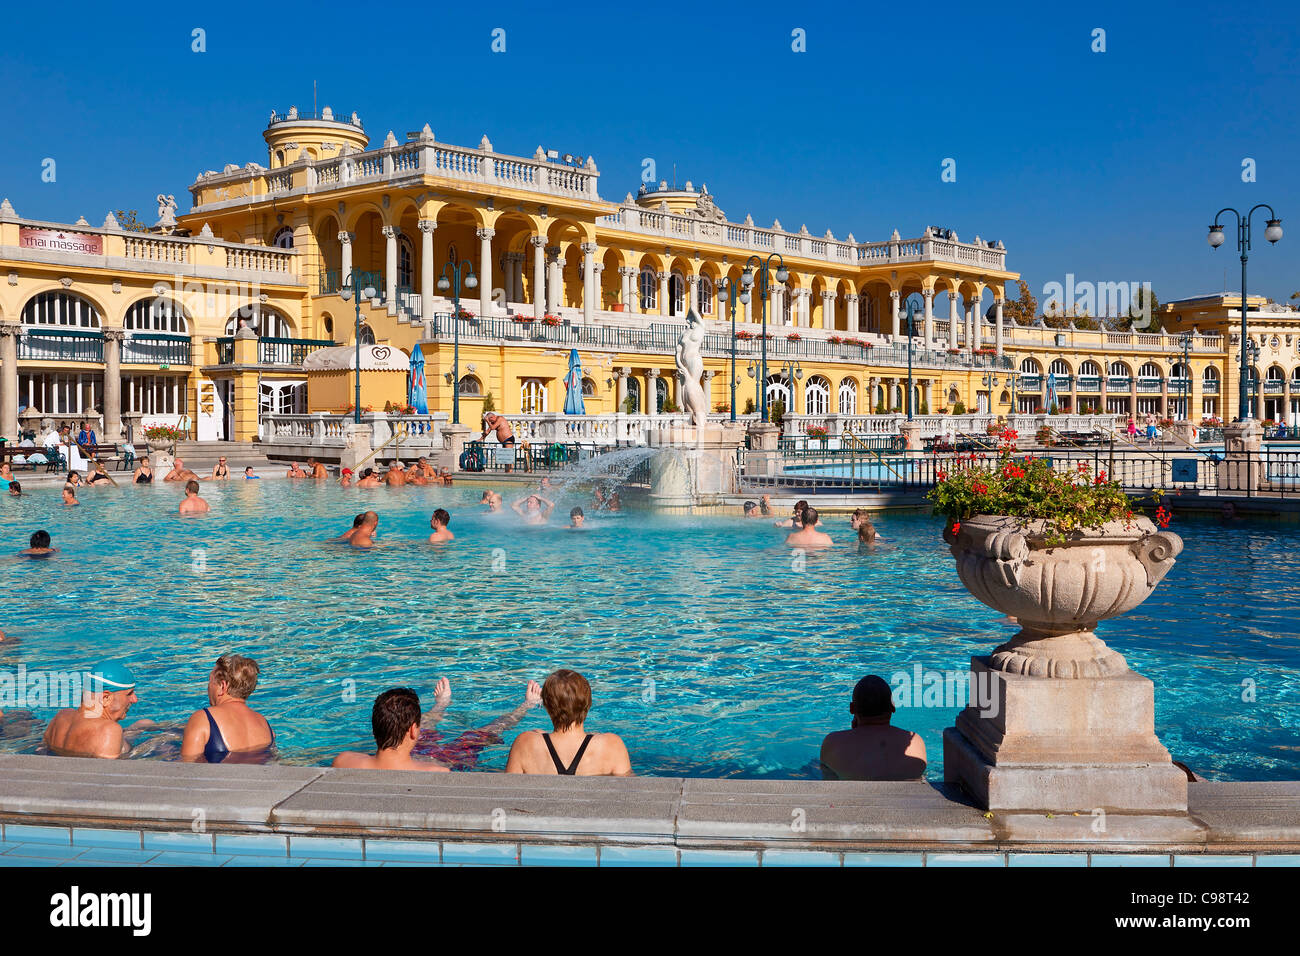 Budapest, Szechenyi Baths Stock Photo